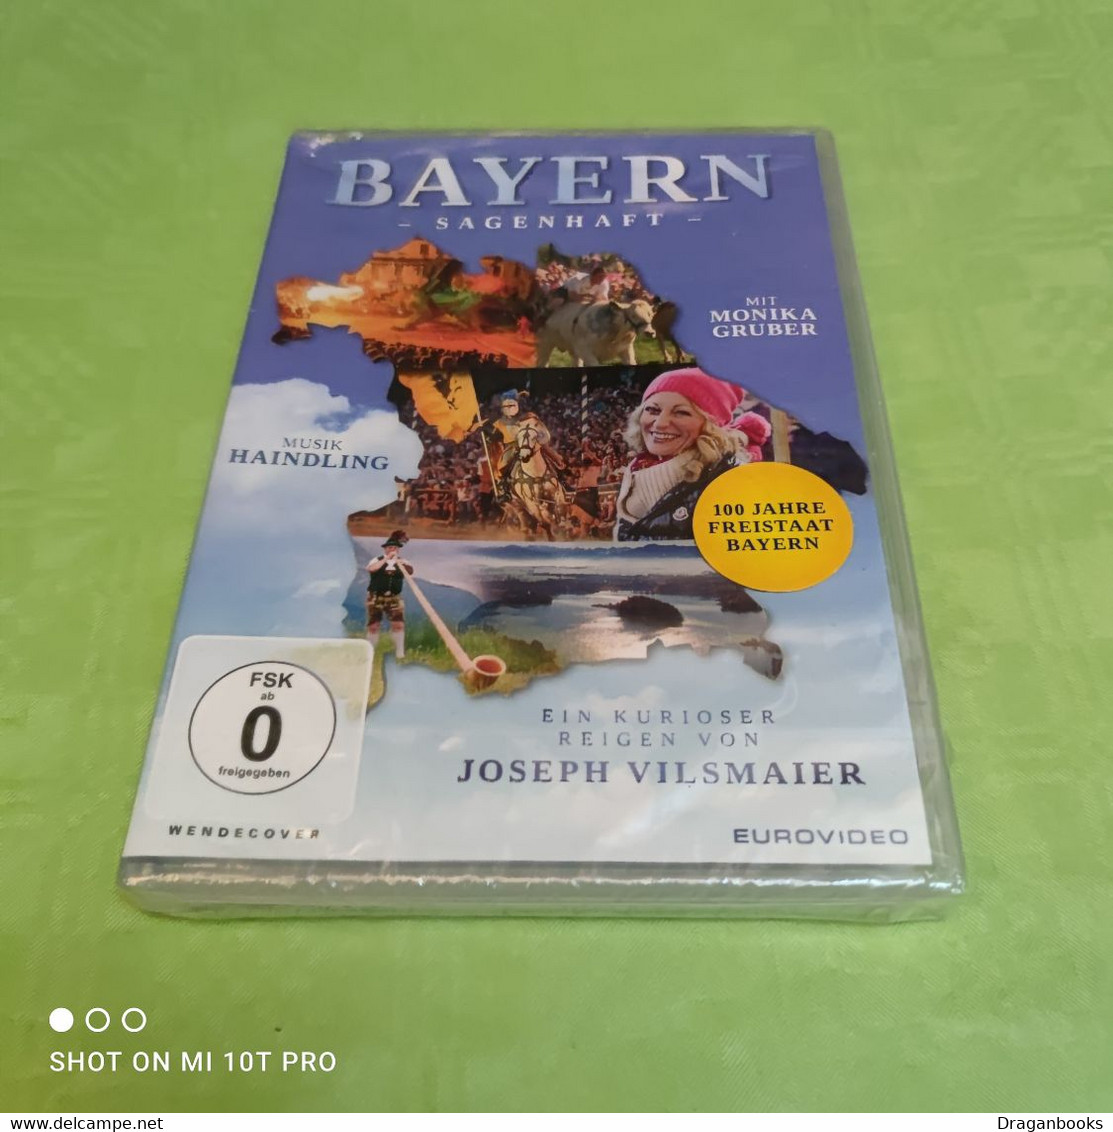 Bayern Sagenhaft - Voyage